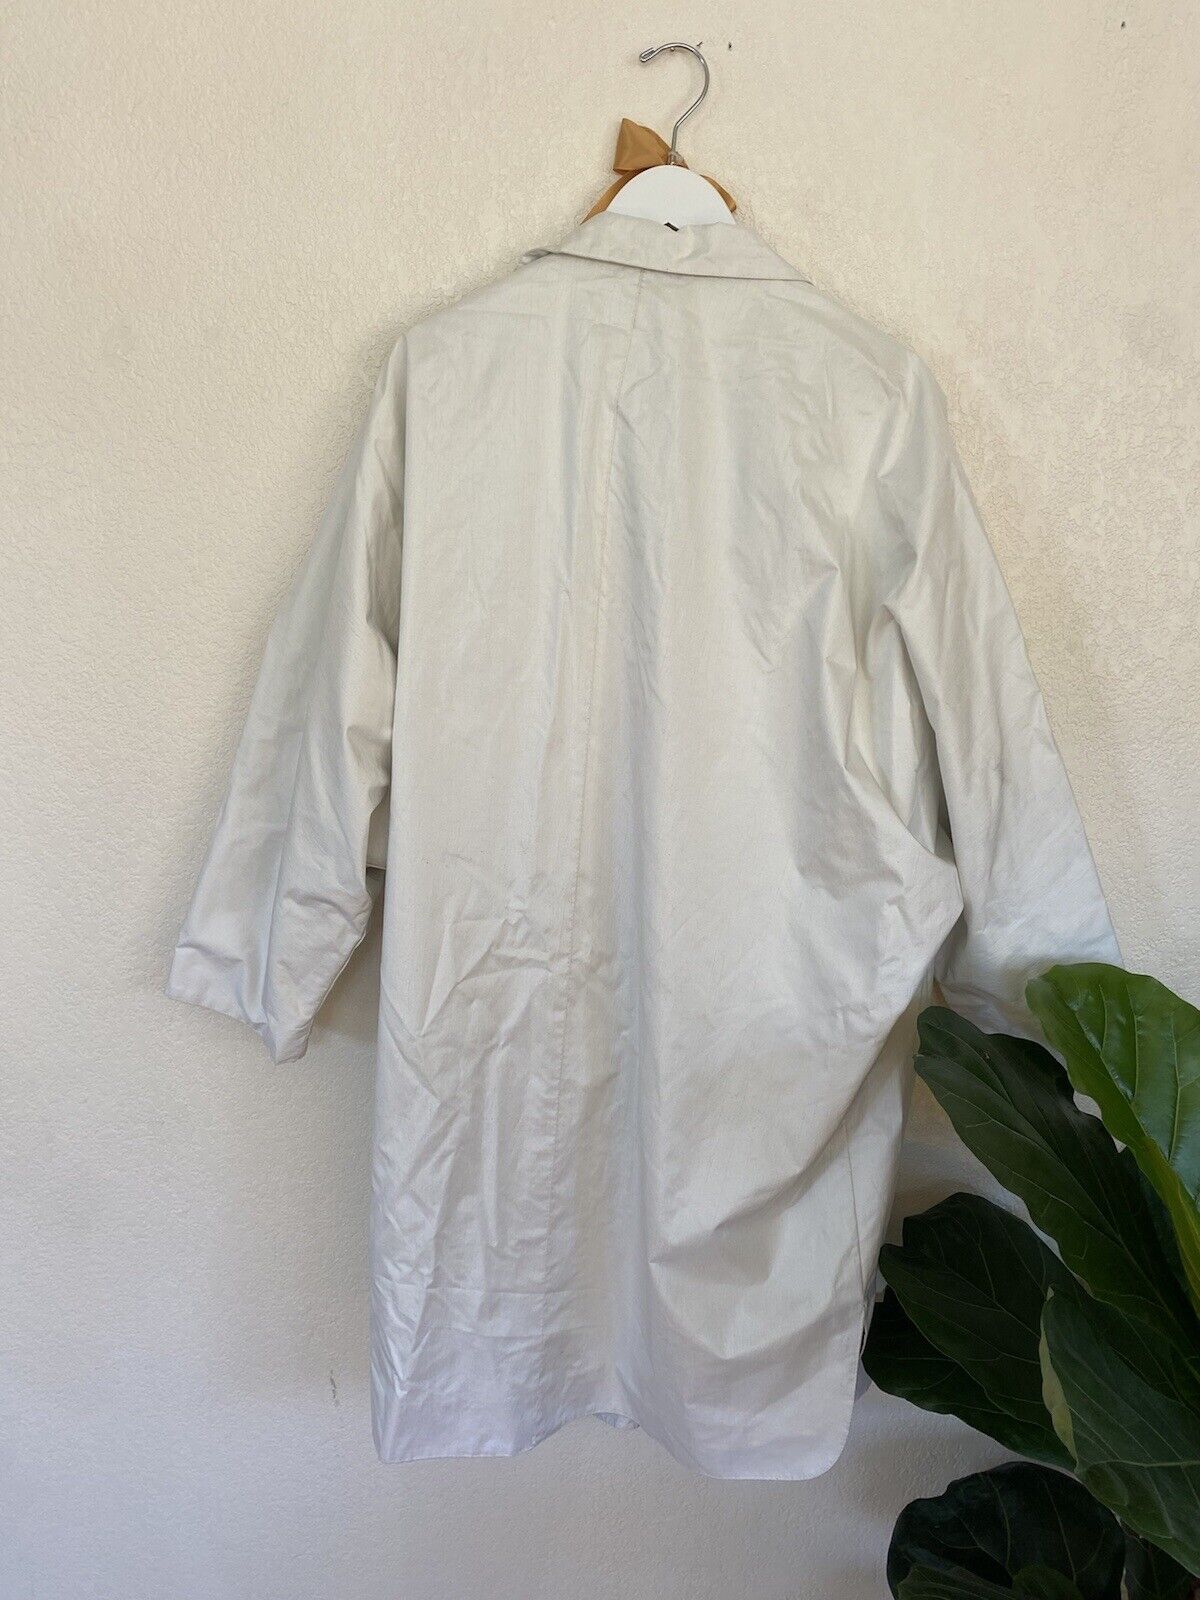 Vintage White Raincoat - RAINGEAR - Adult Medium